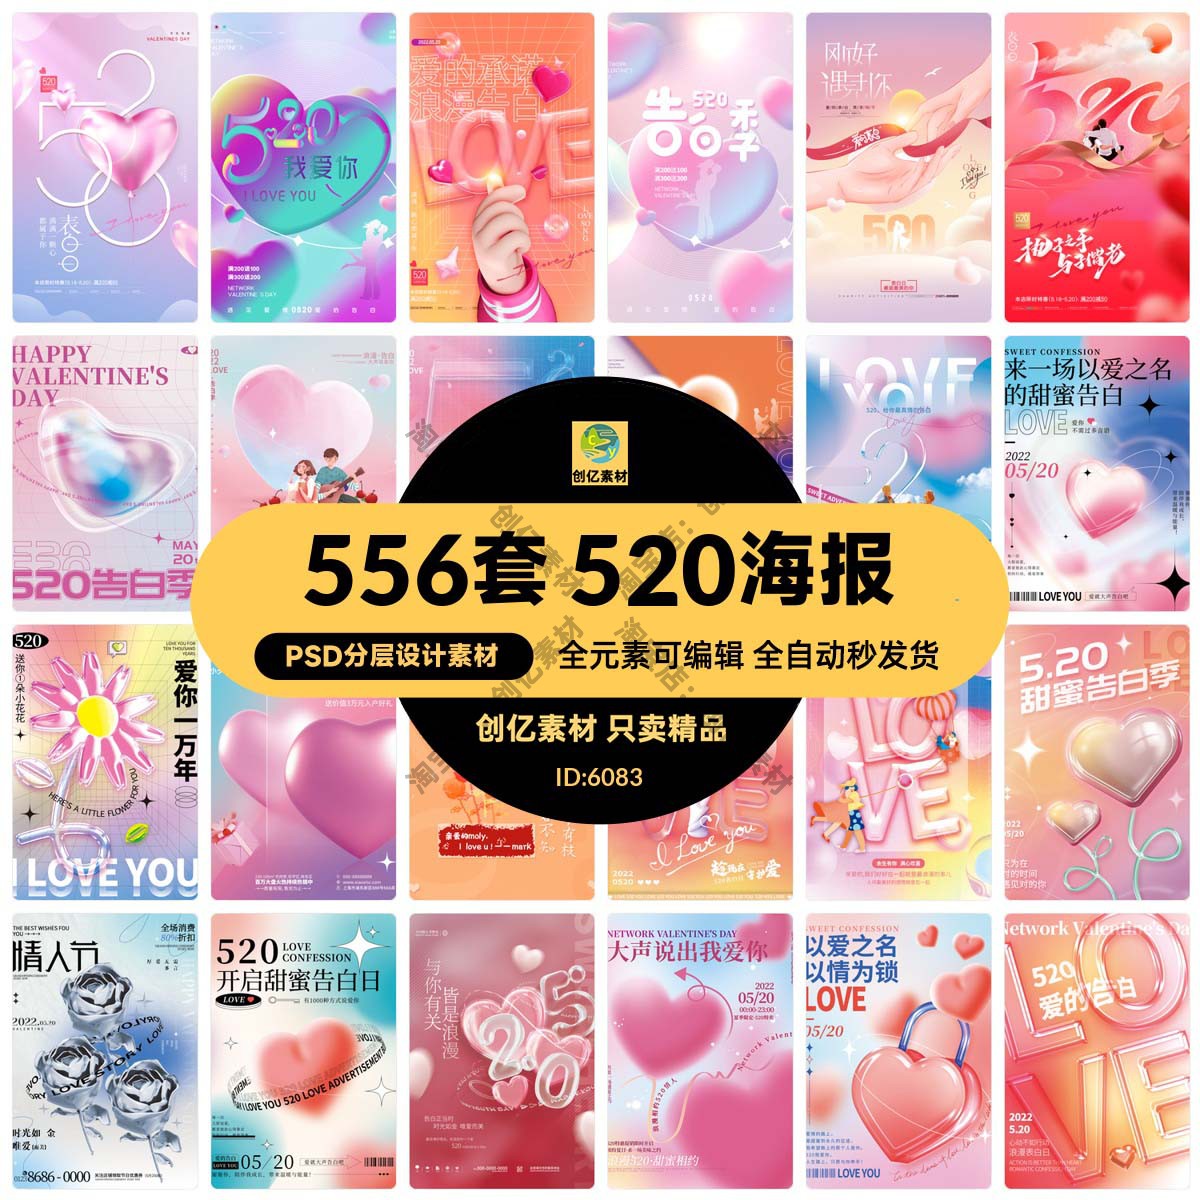 唯美浪漫520情人节主题活动宣传促销海报展板模板PSD/AI设计素材